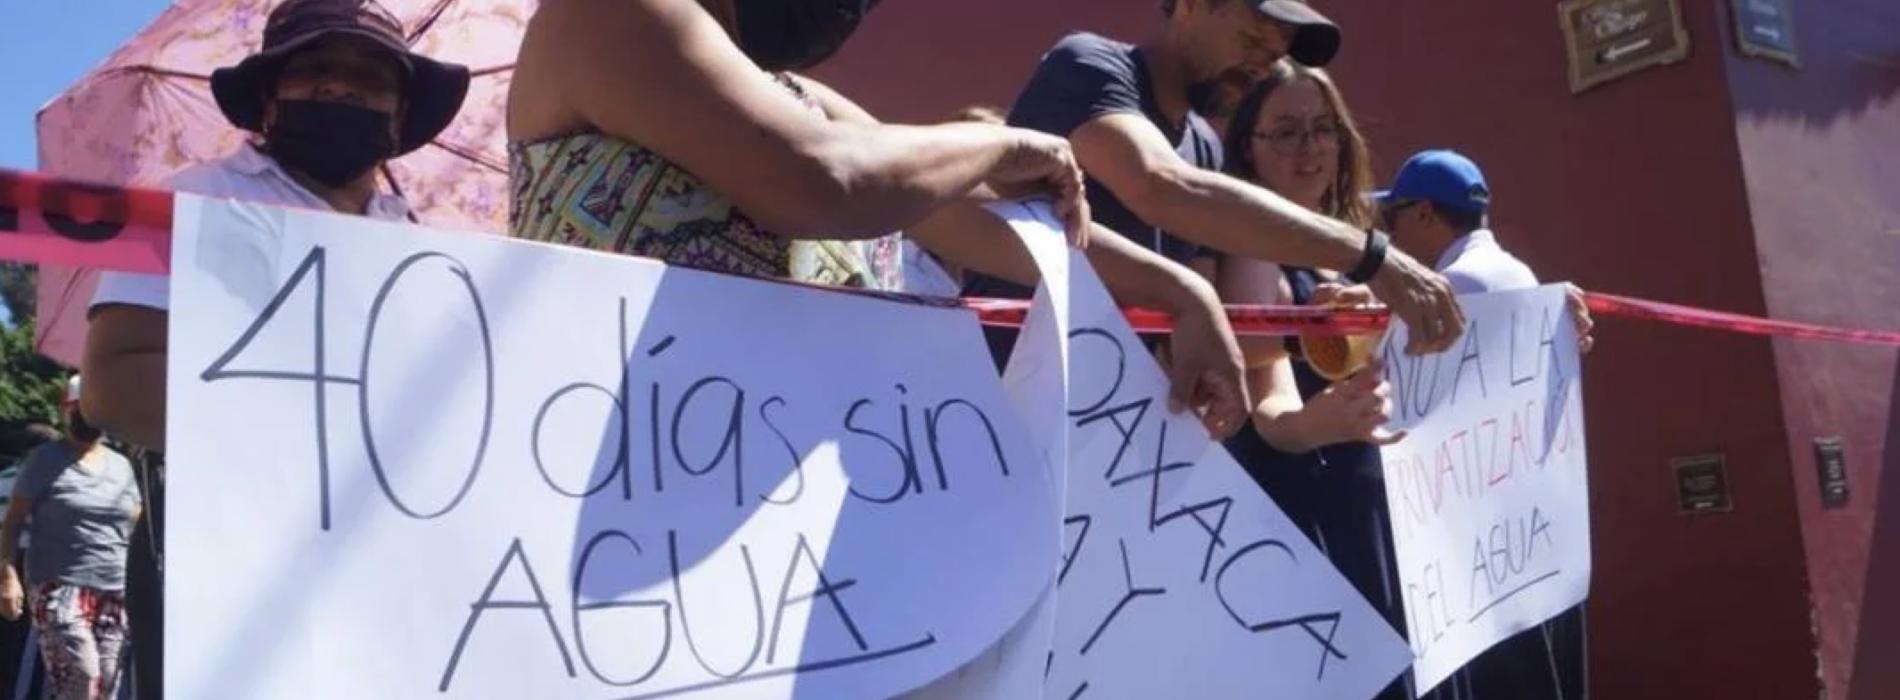 40 días sin agua: Continúan protestas de vecinos de la ciudad de Oaxaca por desabasto